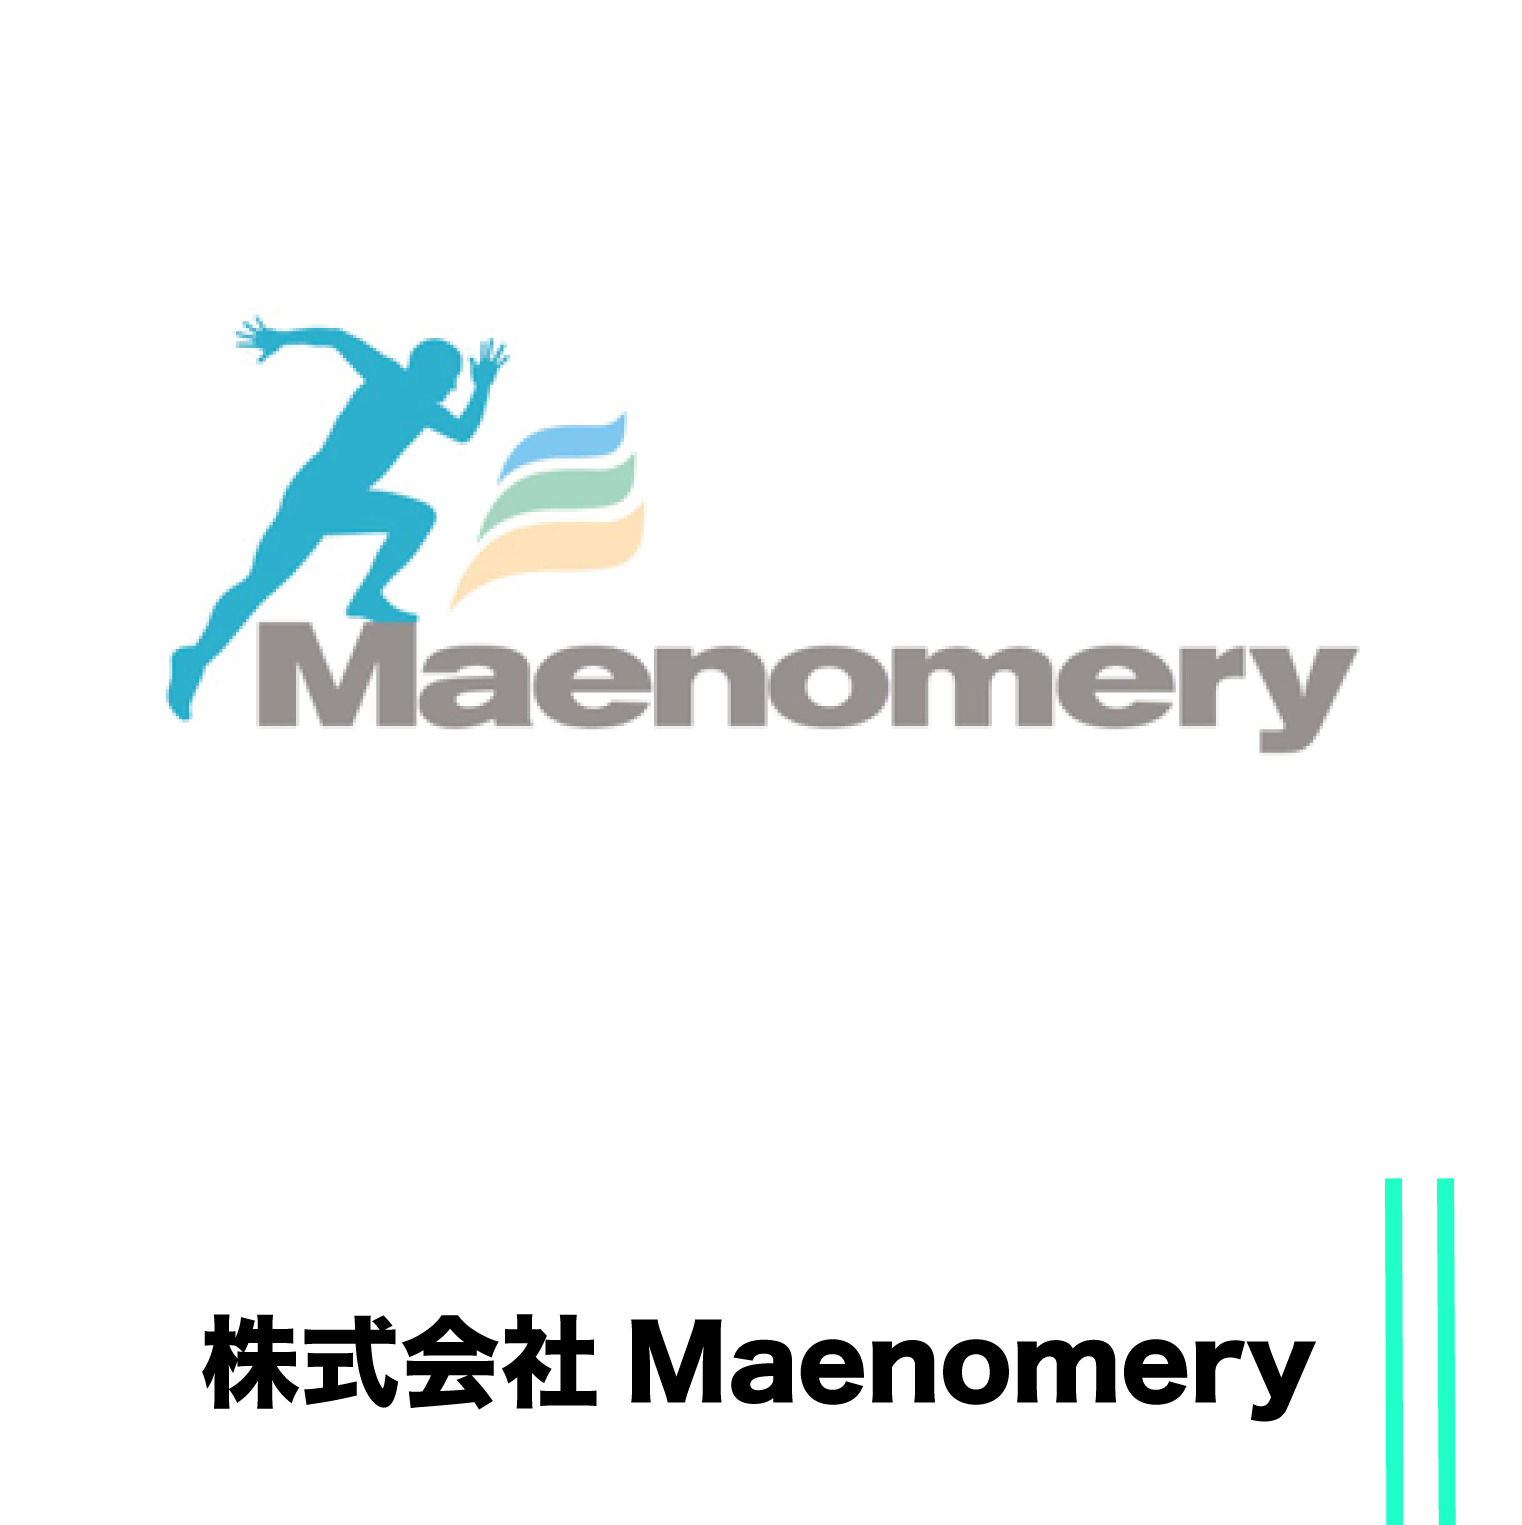 maenomery.jpg